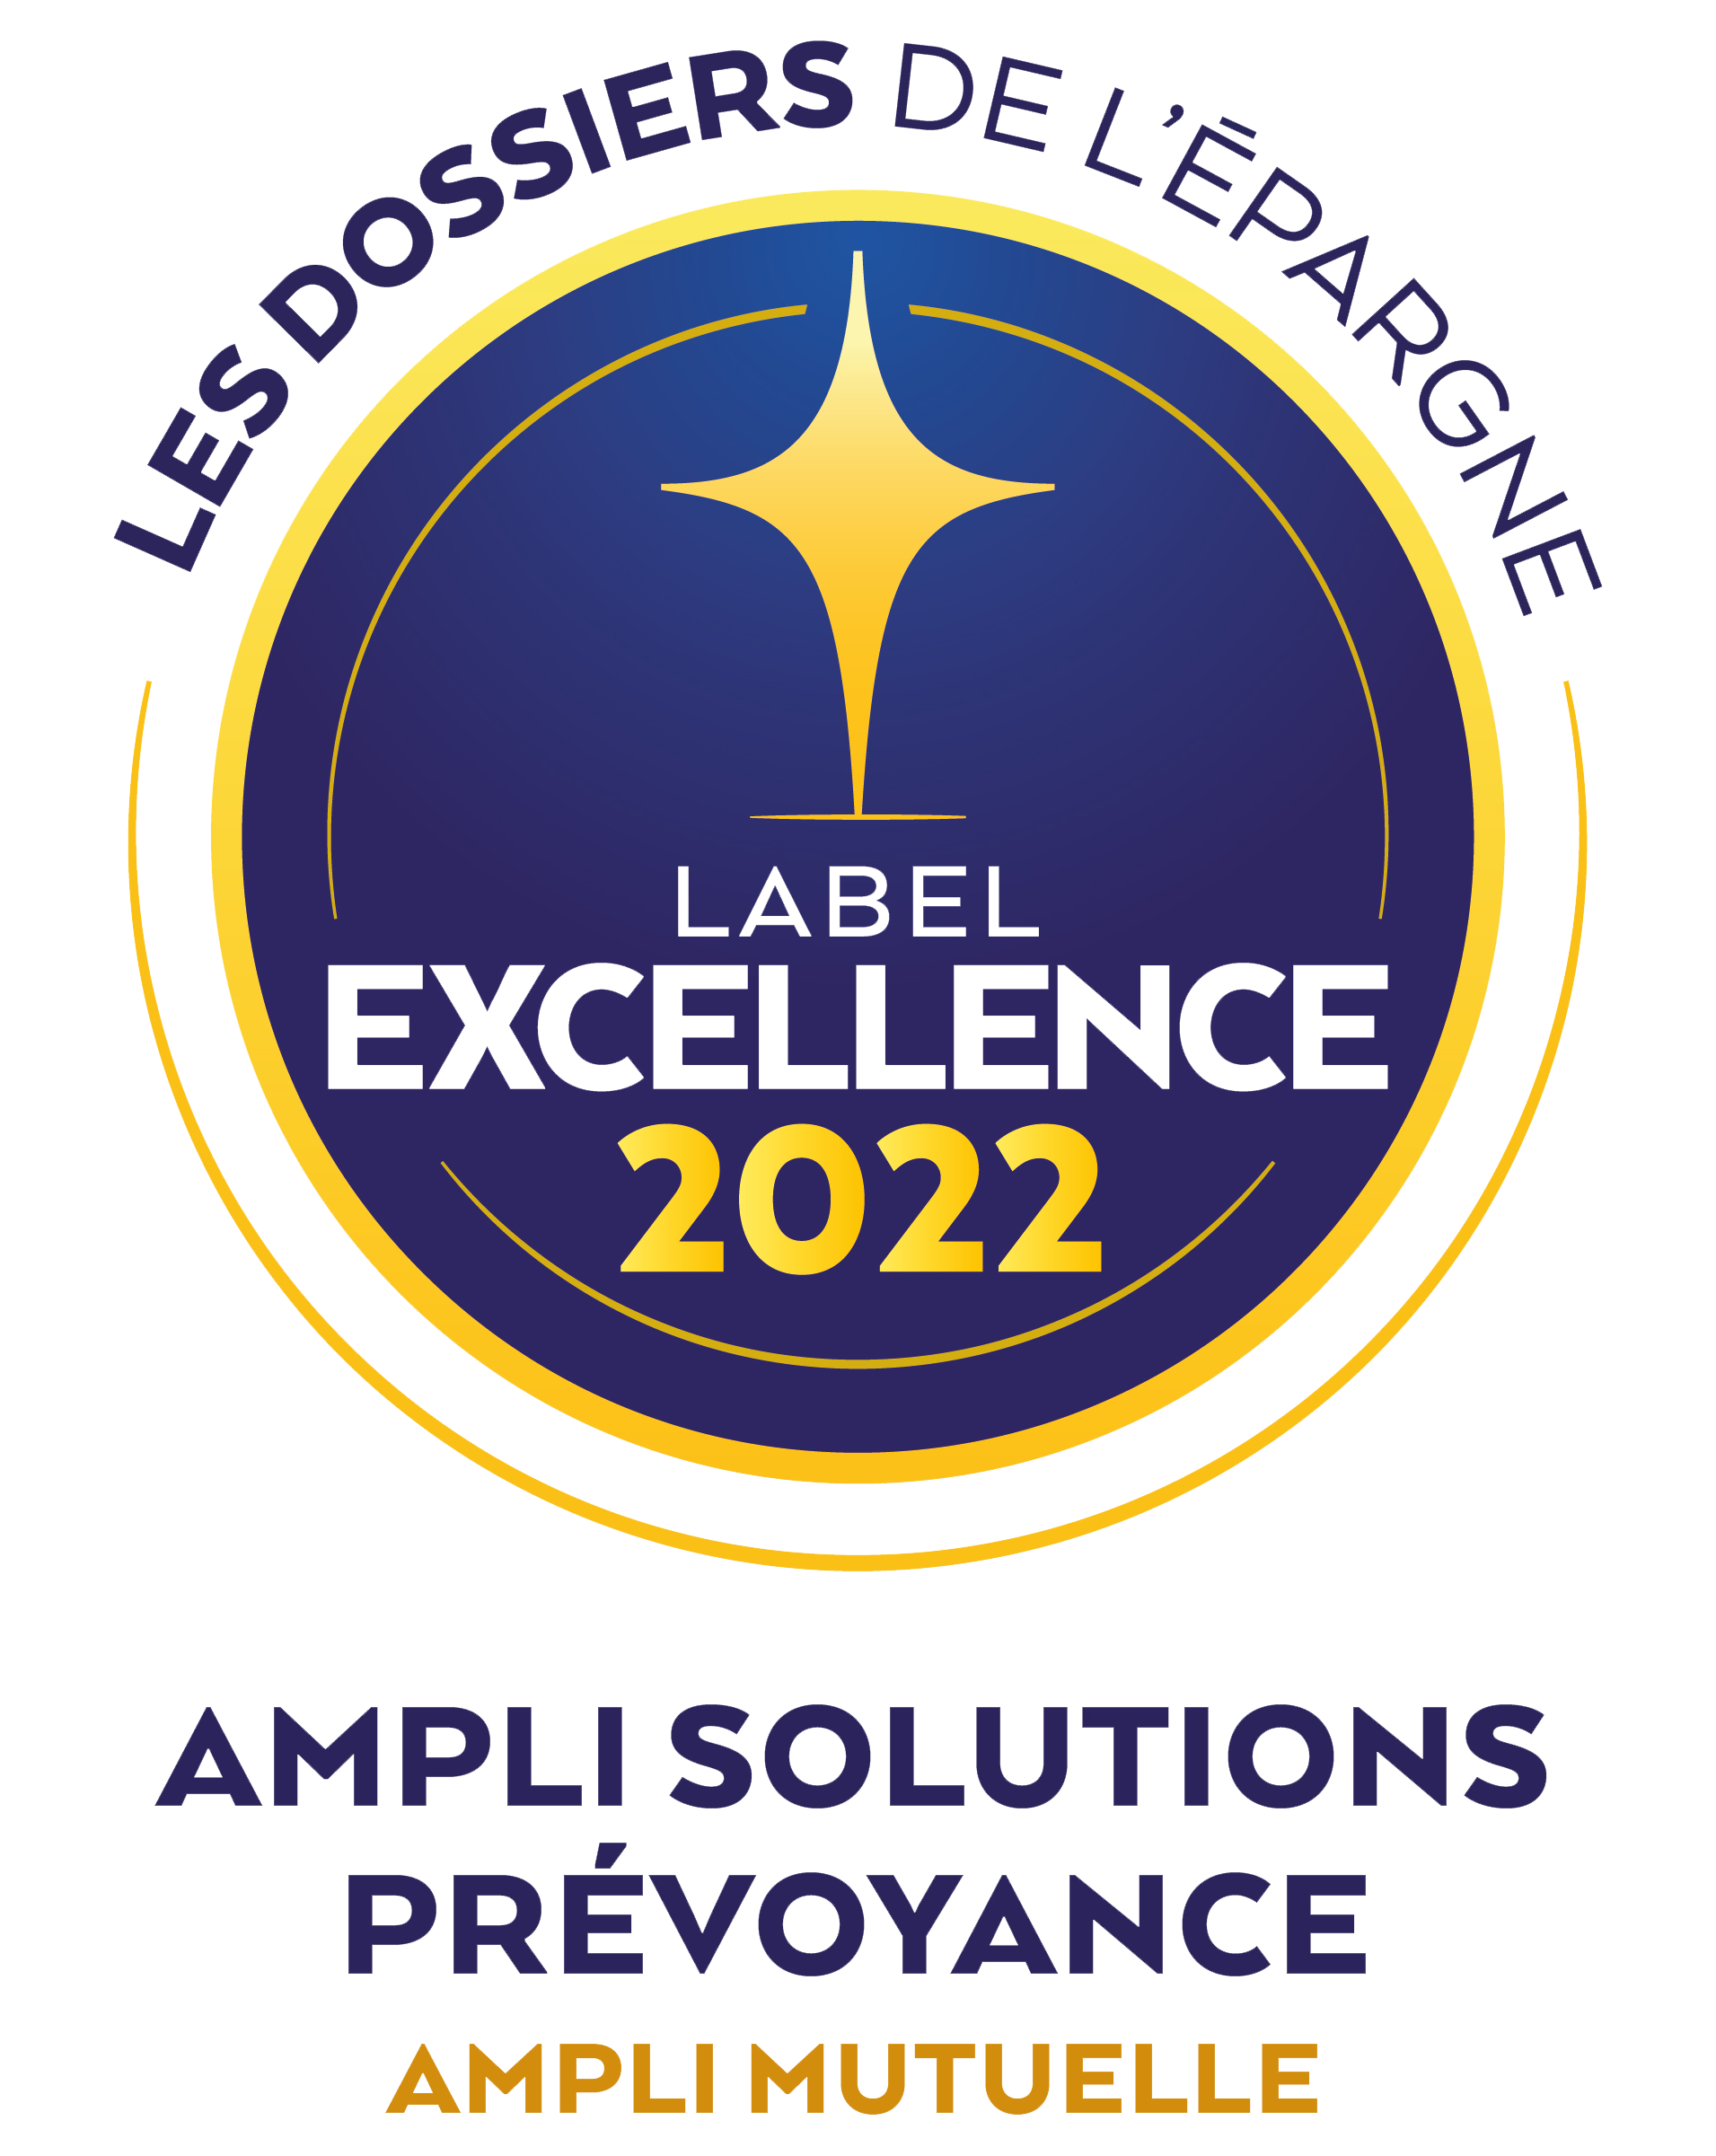 AMPLI solutions prévoyance label excellence 2022